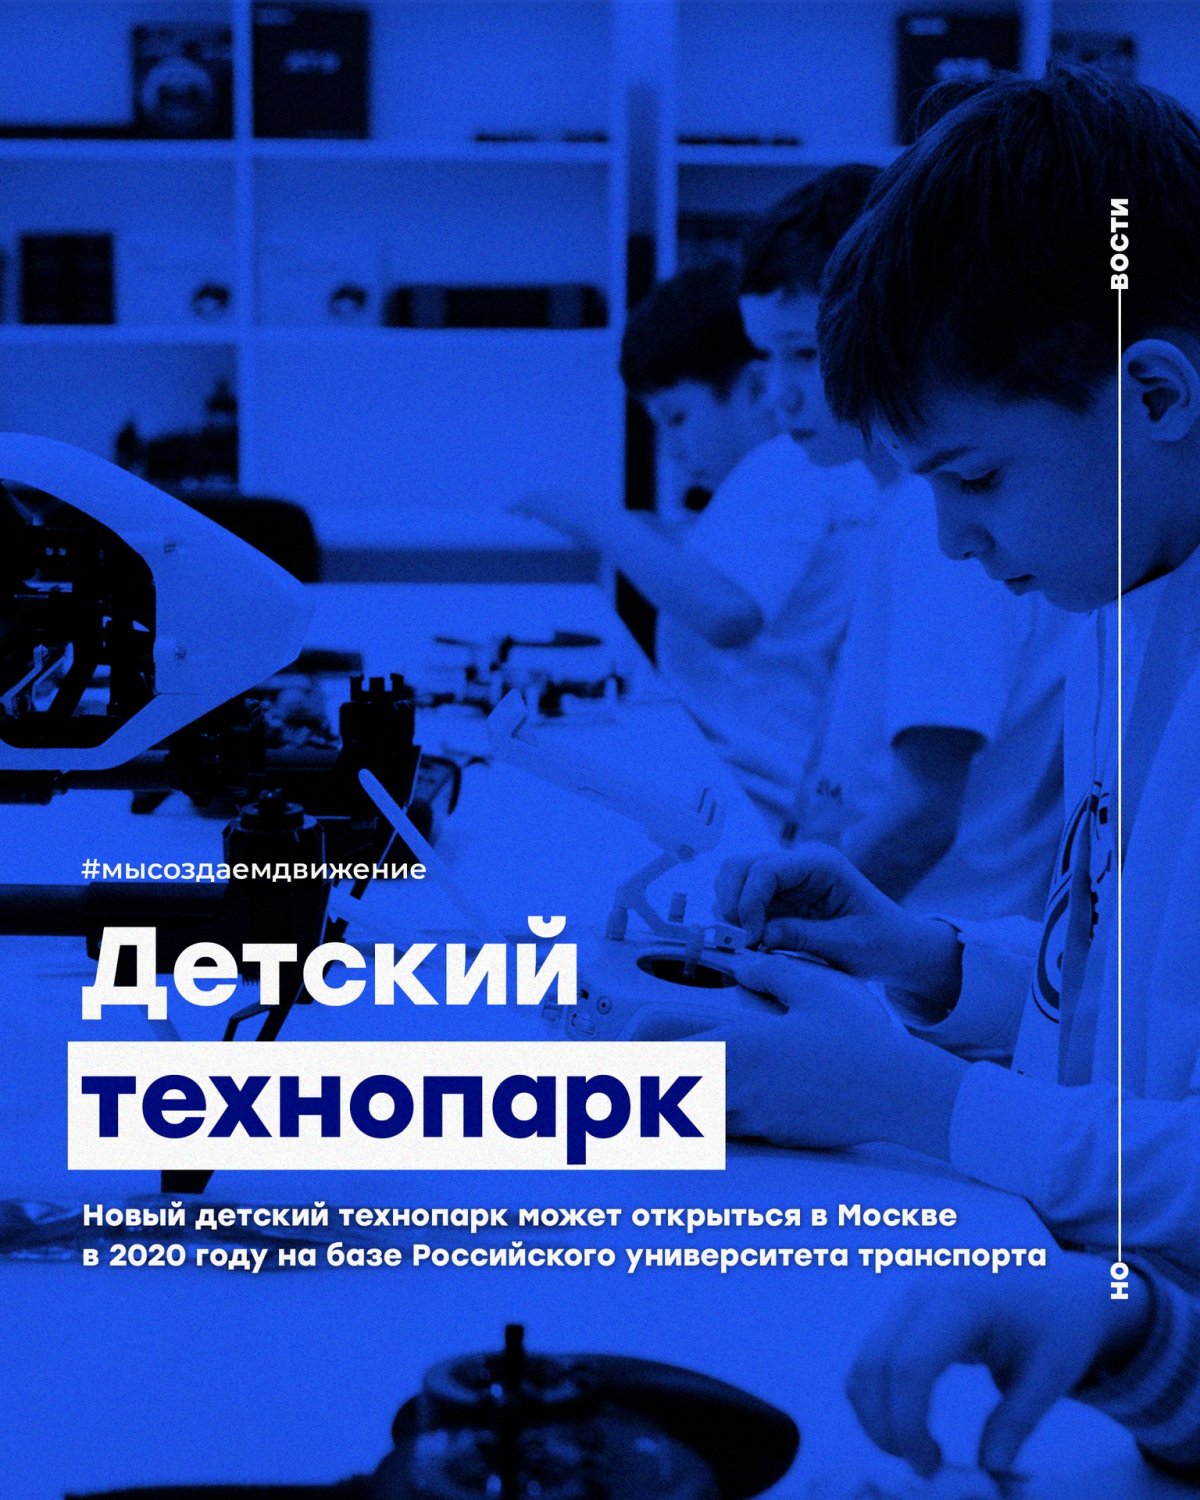 Новый детский технопарк может открыться в Москве в 2020 году на базе Российского университета транспорта